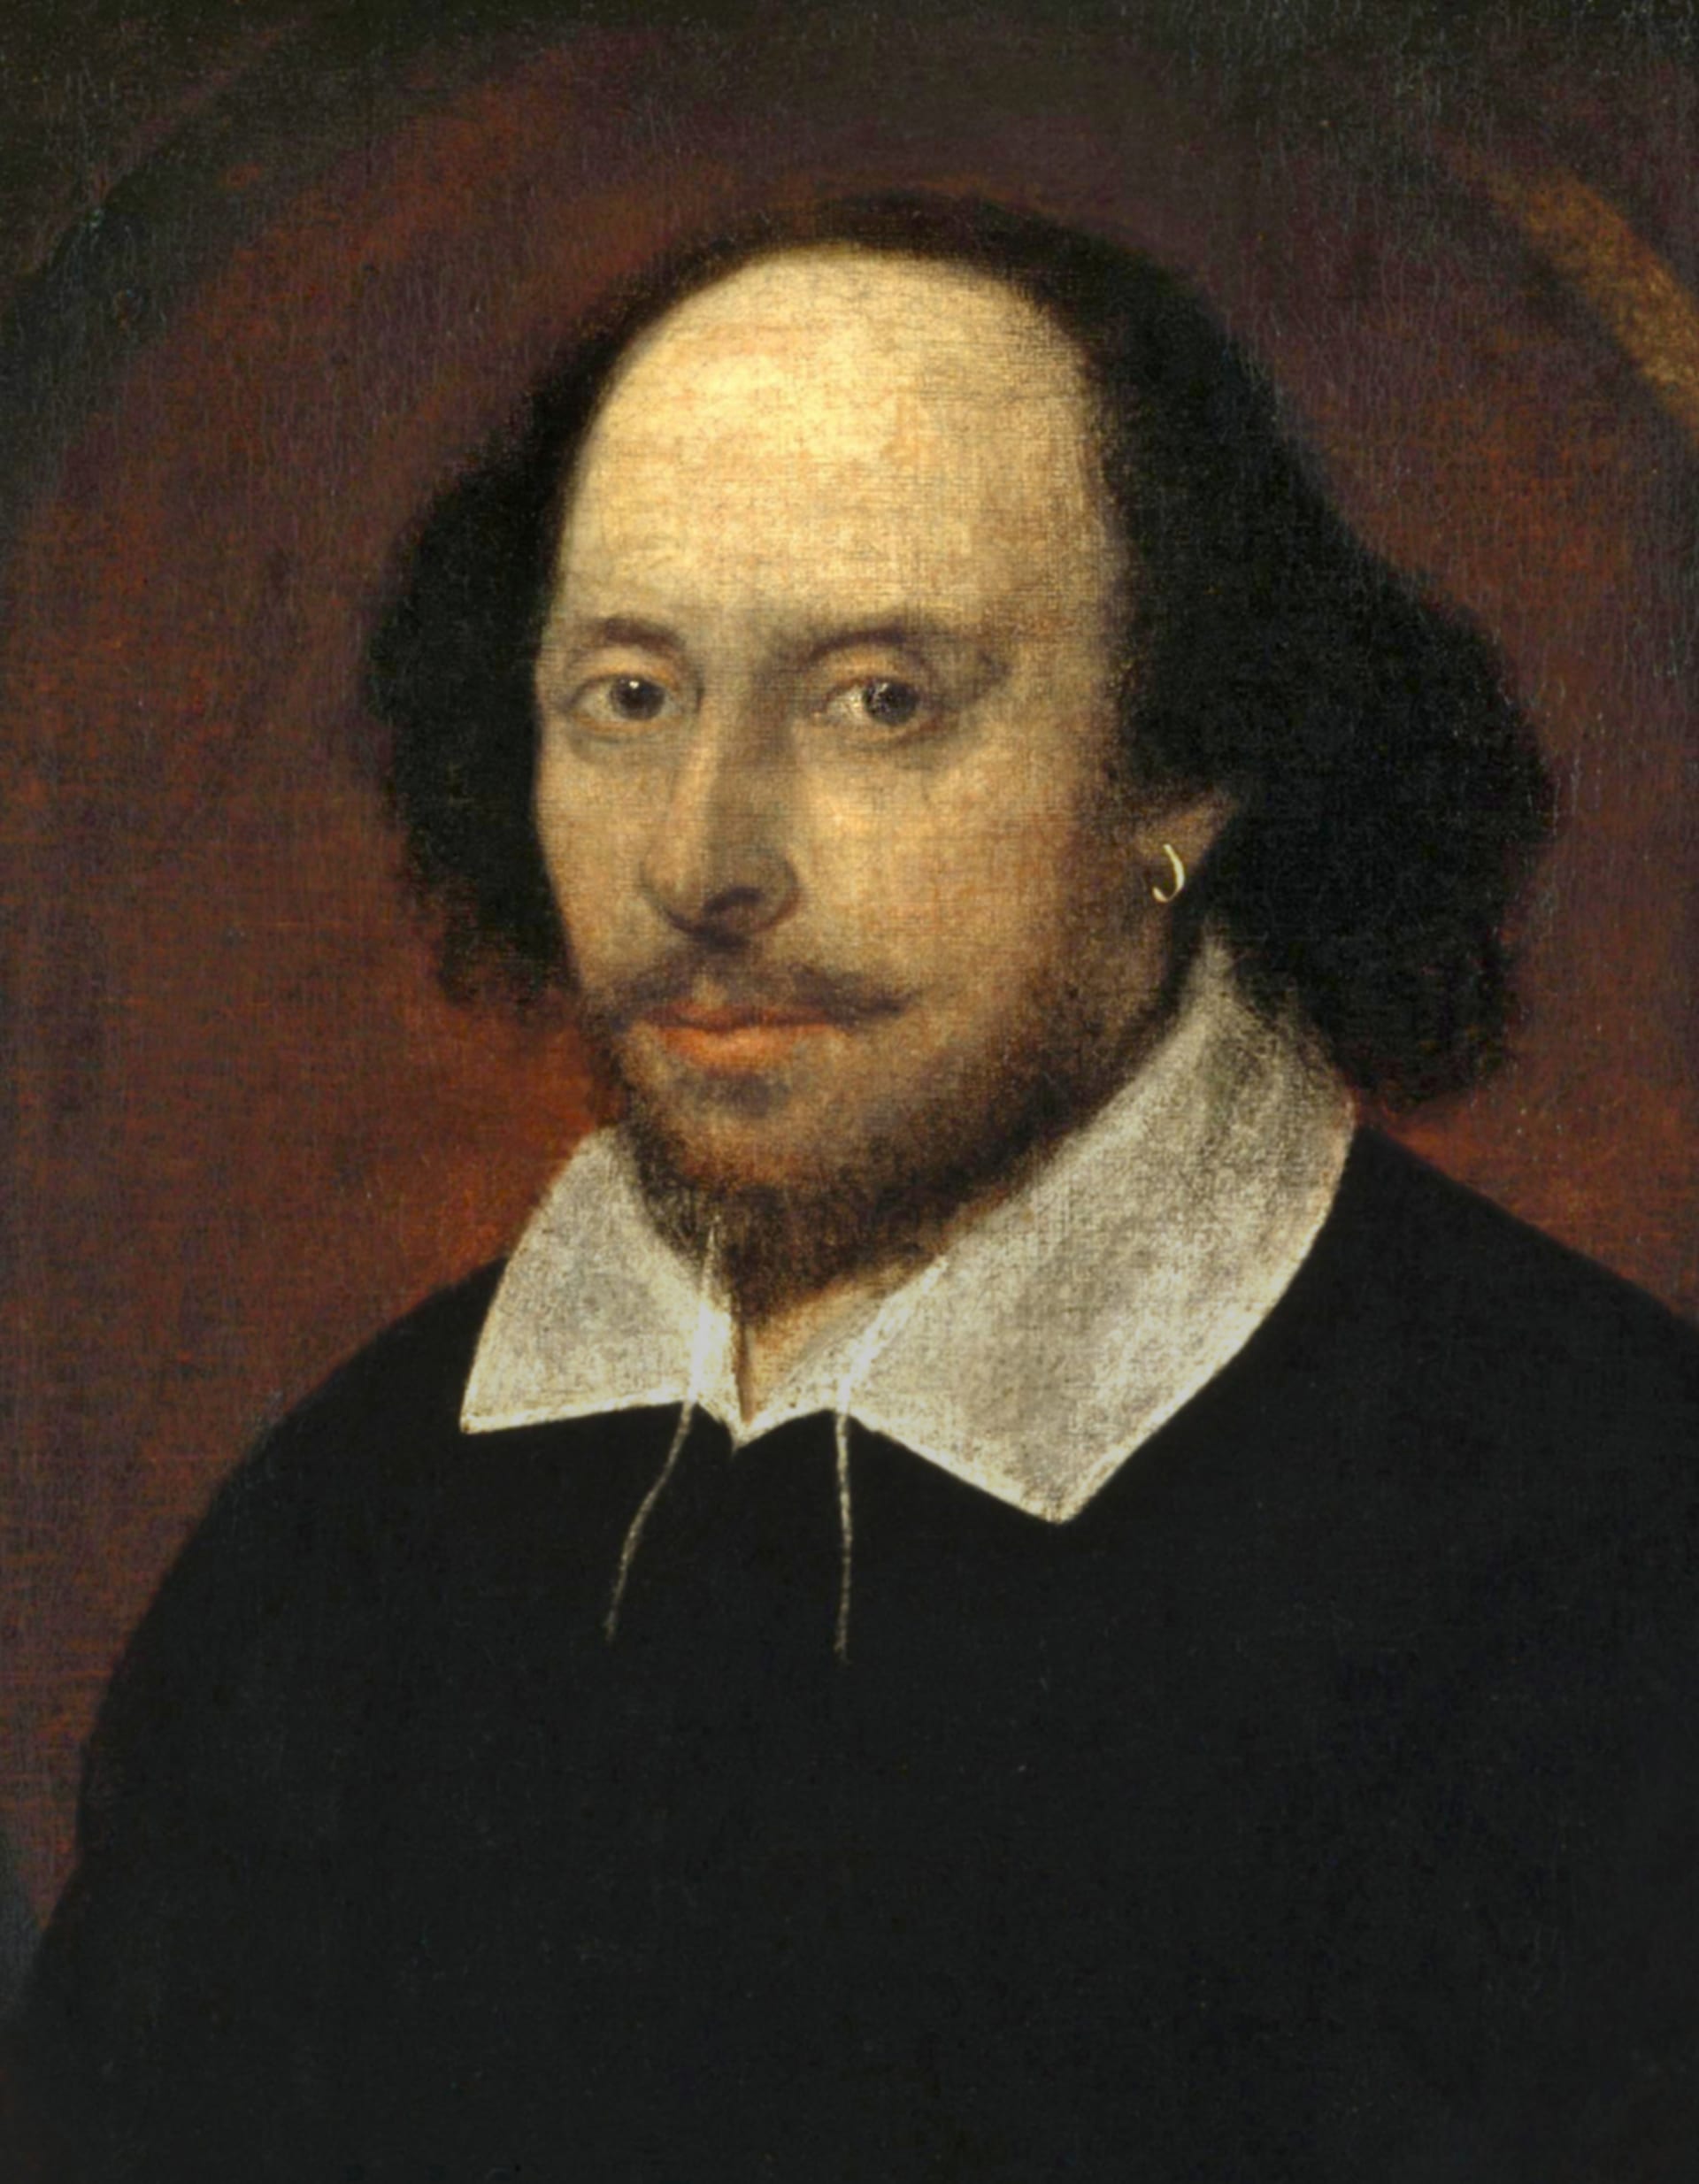 William Shakespeare rozhodně nebyl žádný intelektuál, někdo, kdo si myslí, že myšlenky jsou důležitější než lidé. Jeho hry jsou zásadně o lidech, nikoli o myšlenkách.